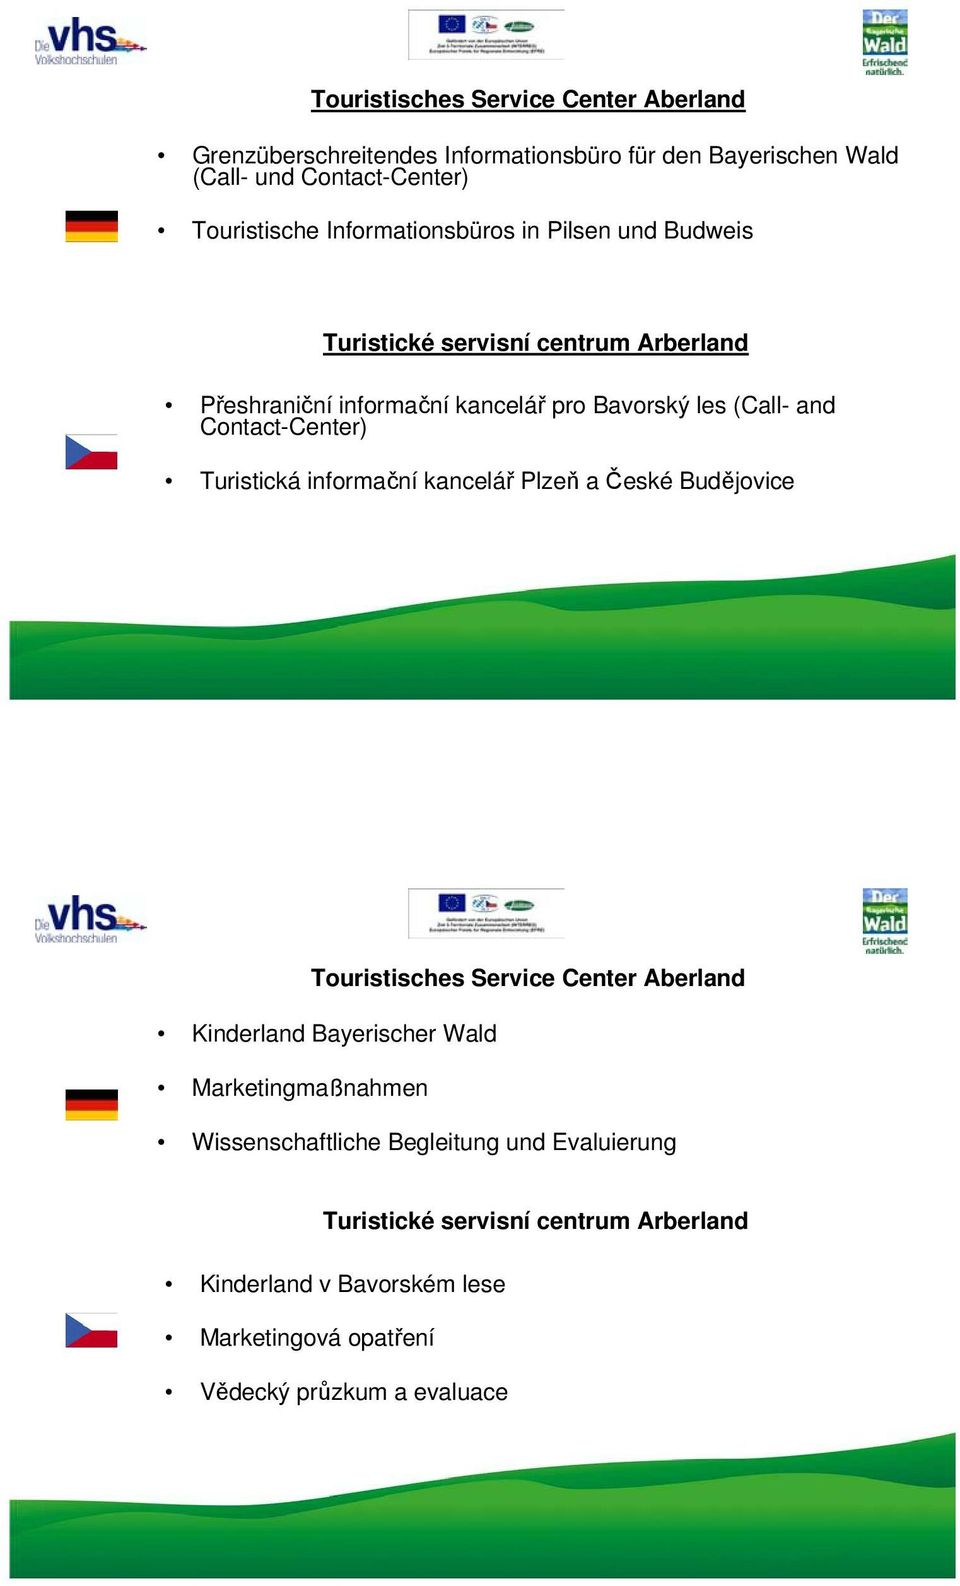 Contact-Center) Turistická informační kancelář Plzeň a České Budějovice Touristisches Service Center Aberland Kinderland Bayerischer Wald